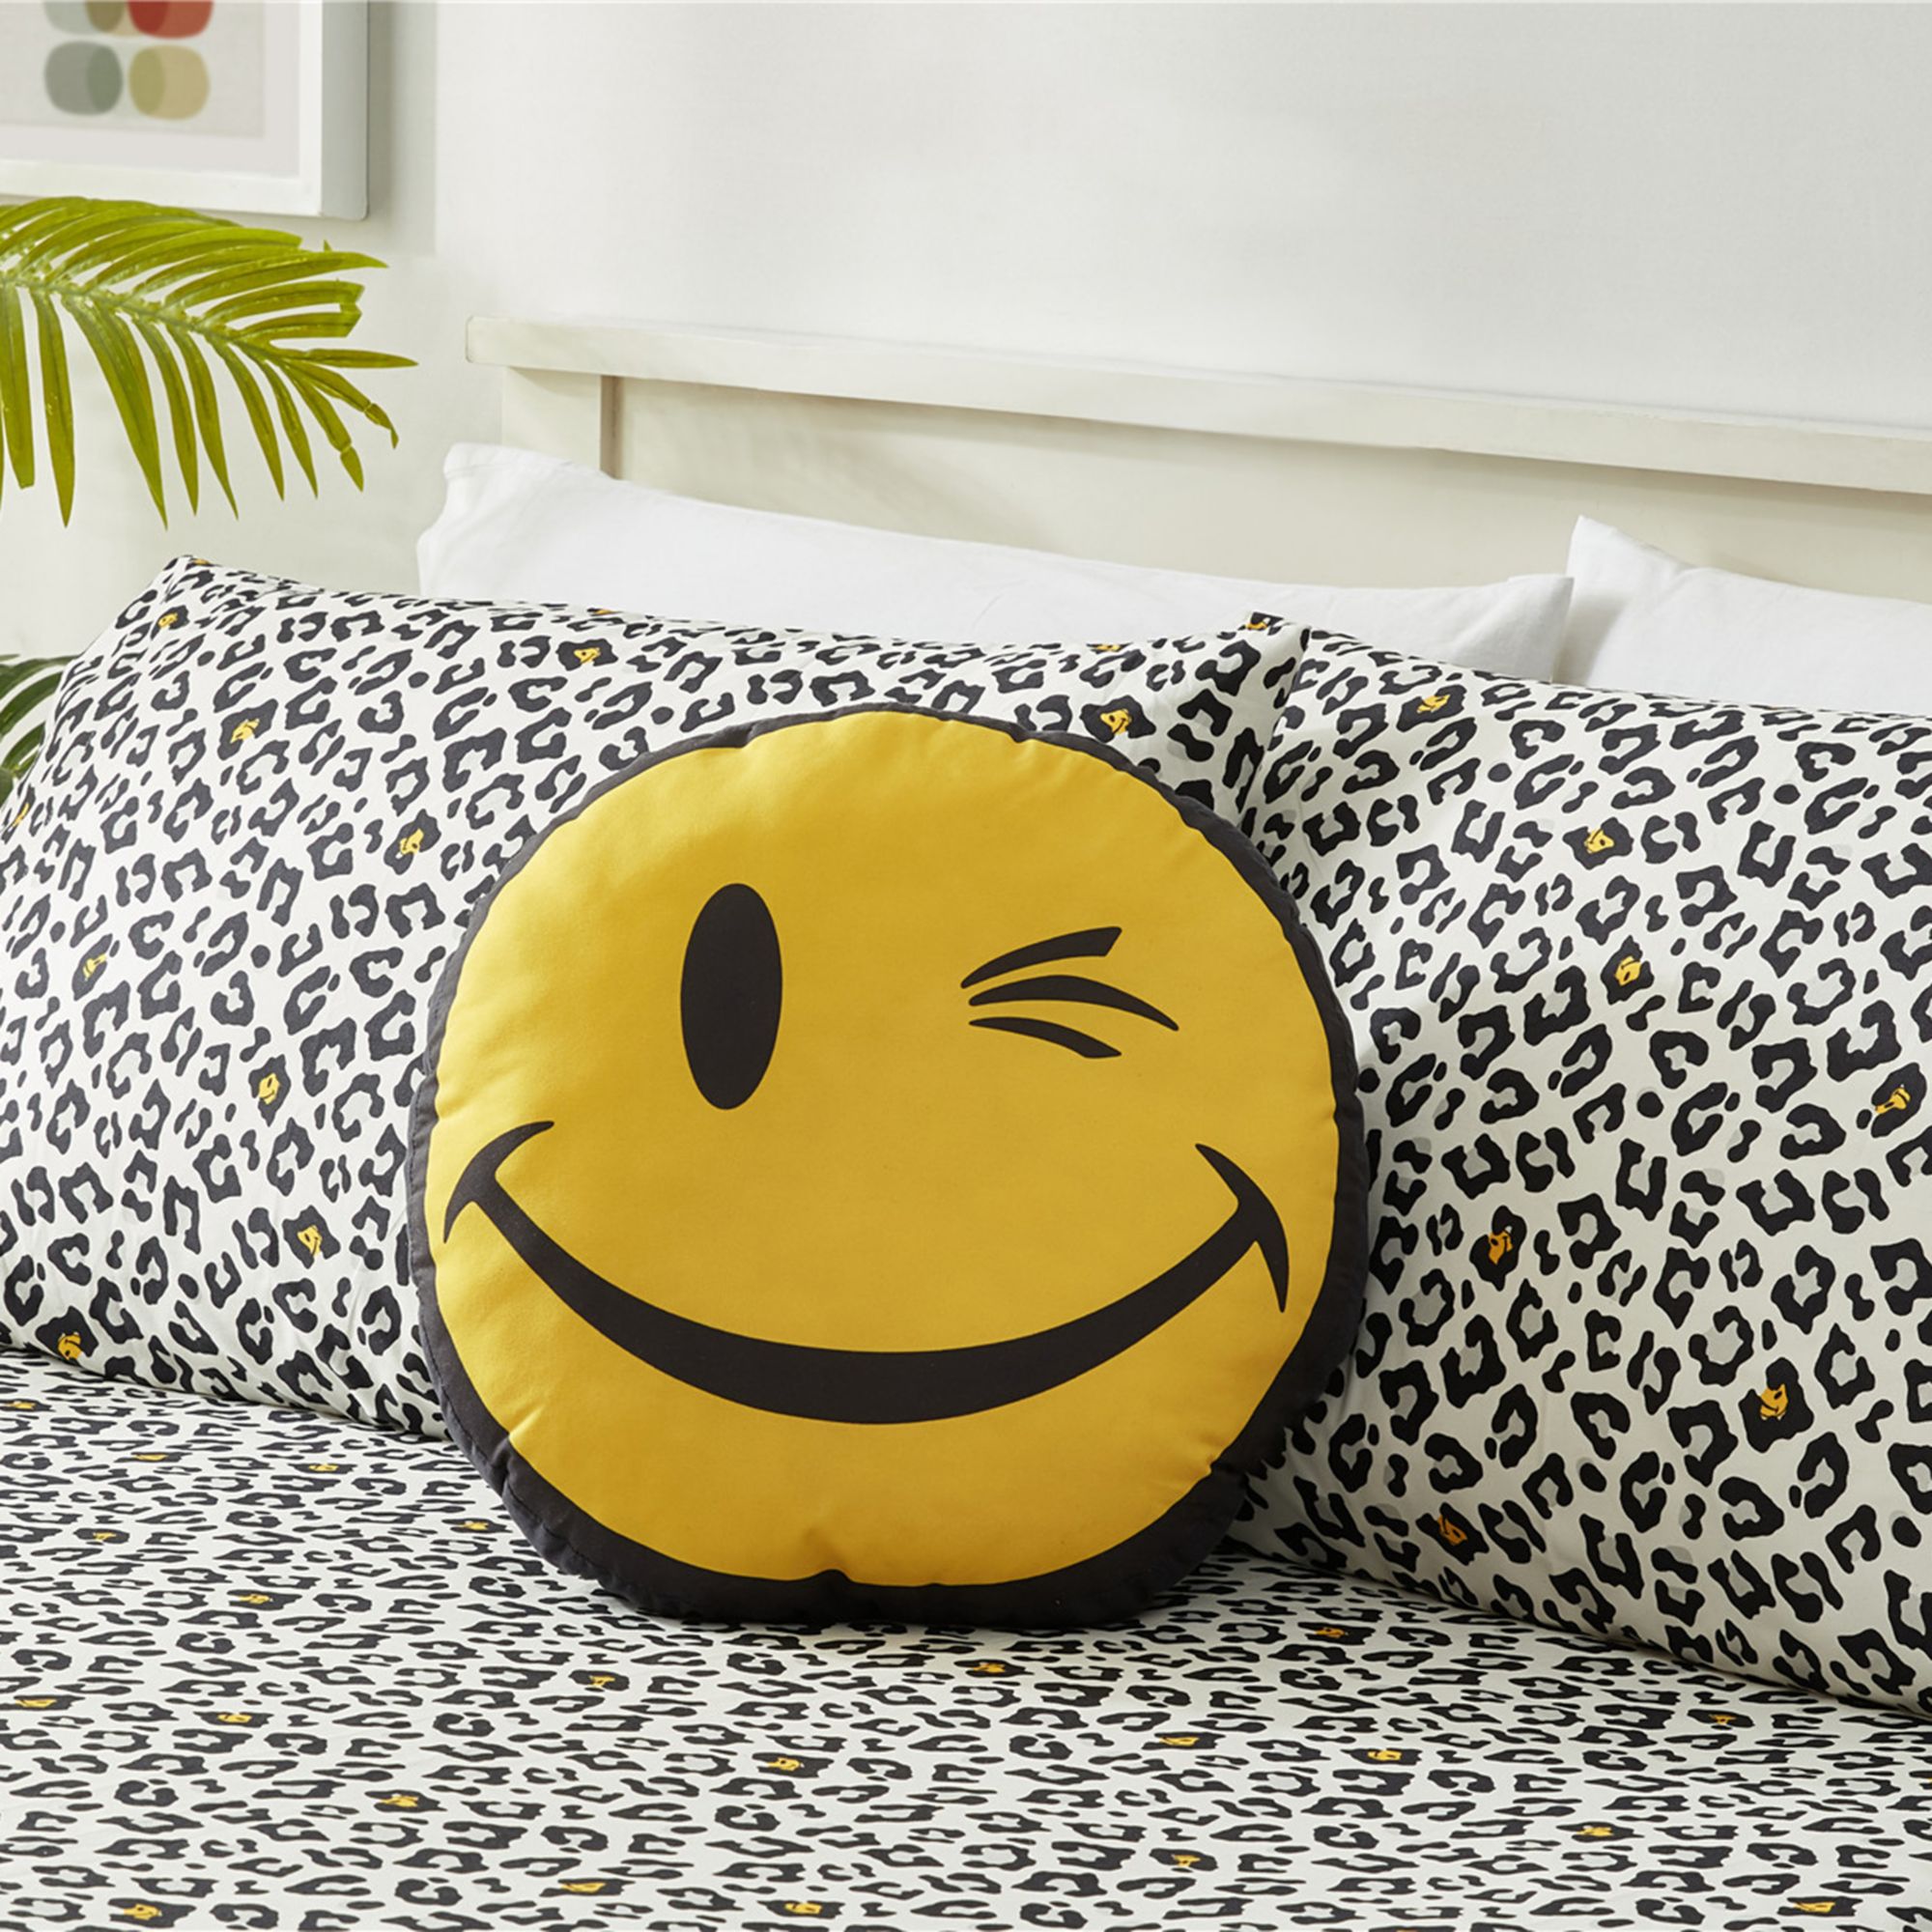 Joe Boxer Fun Prints Ultra Soft Smile Wink Pillow